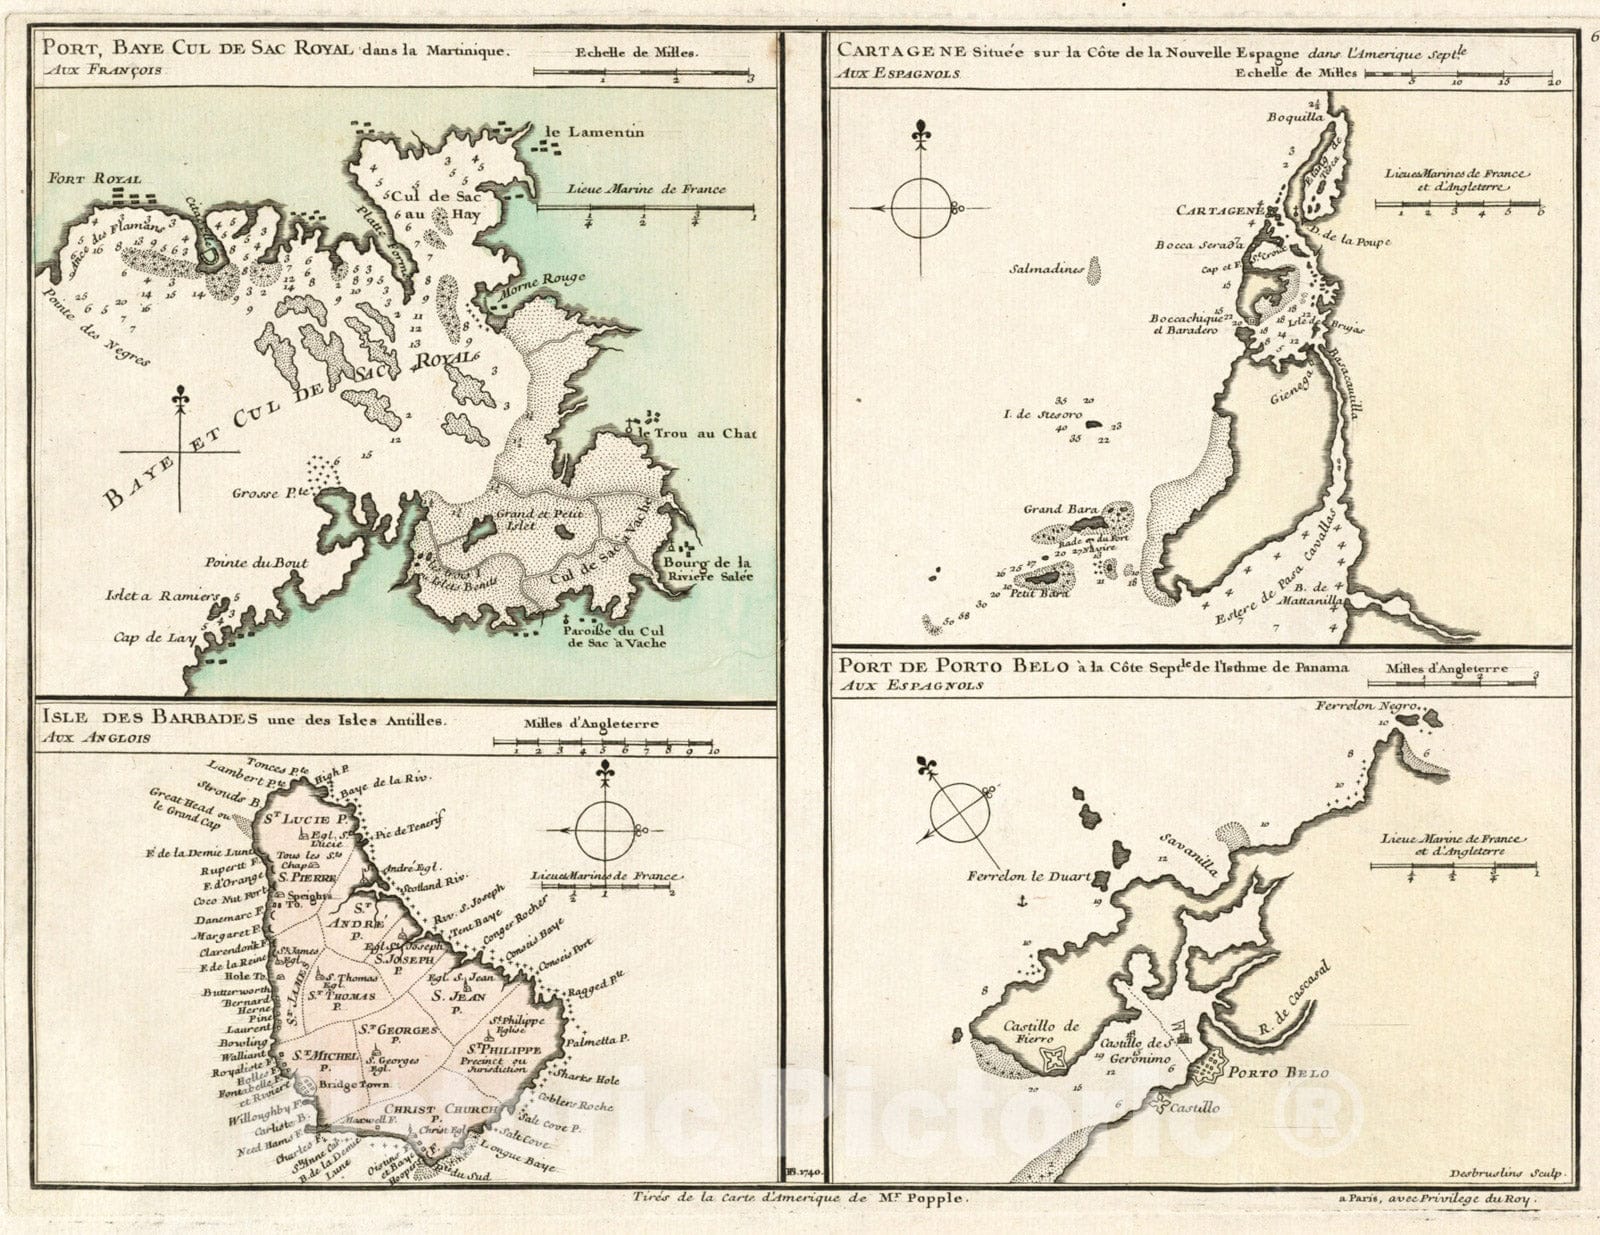 Historical Map, 1740 Port, baye cul de sac Royal Dans la Martinique - Isle des Barbades une des Isles Antilles - Cartagene situee sur le CAÂ´te de la Nouvelle Espagne, Vintage Wall Art